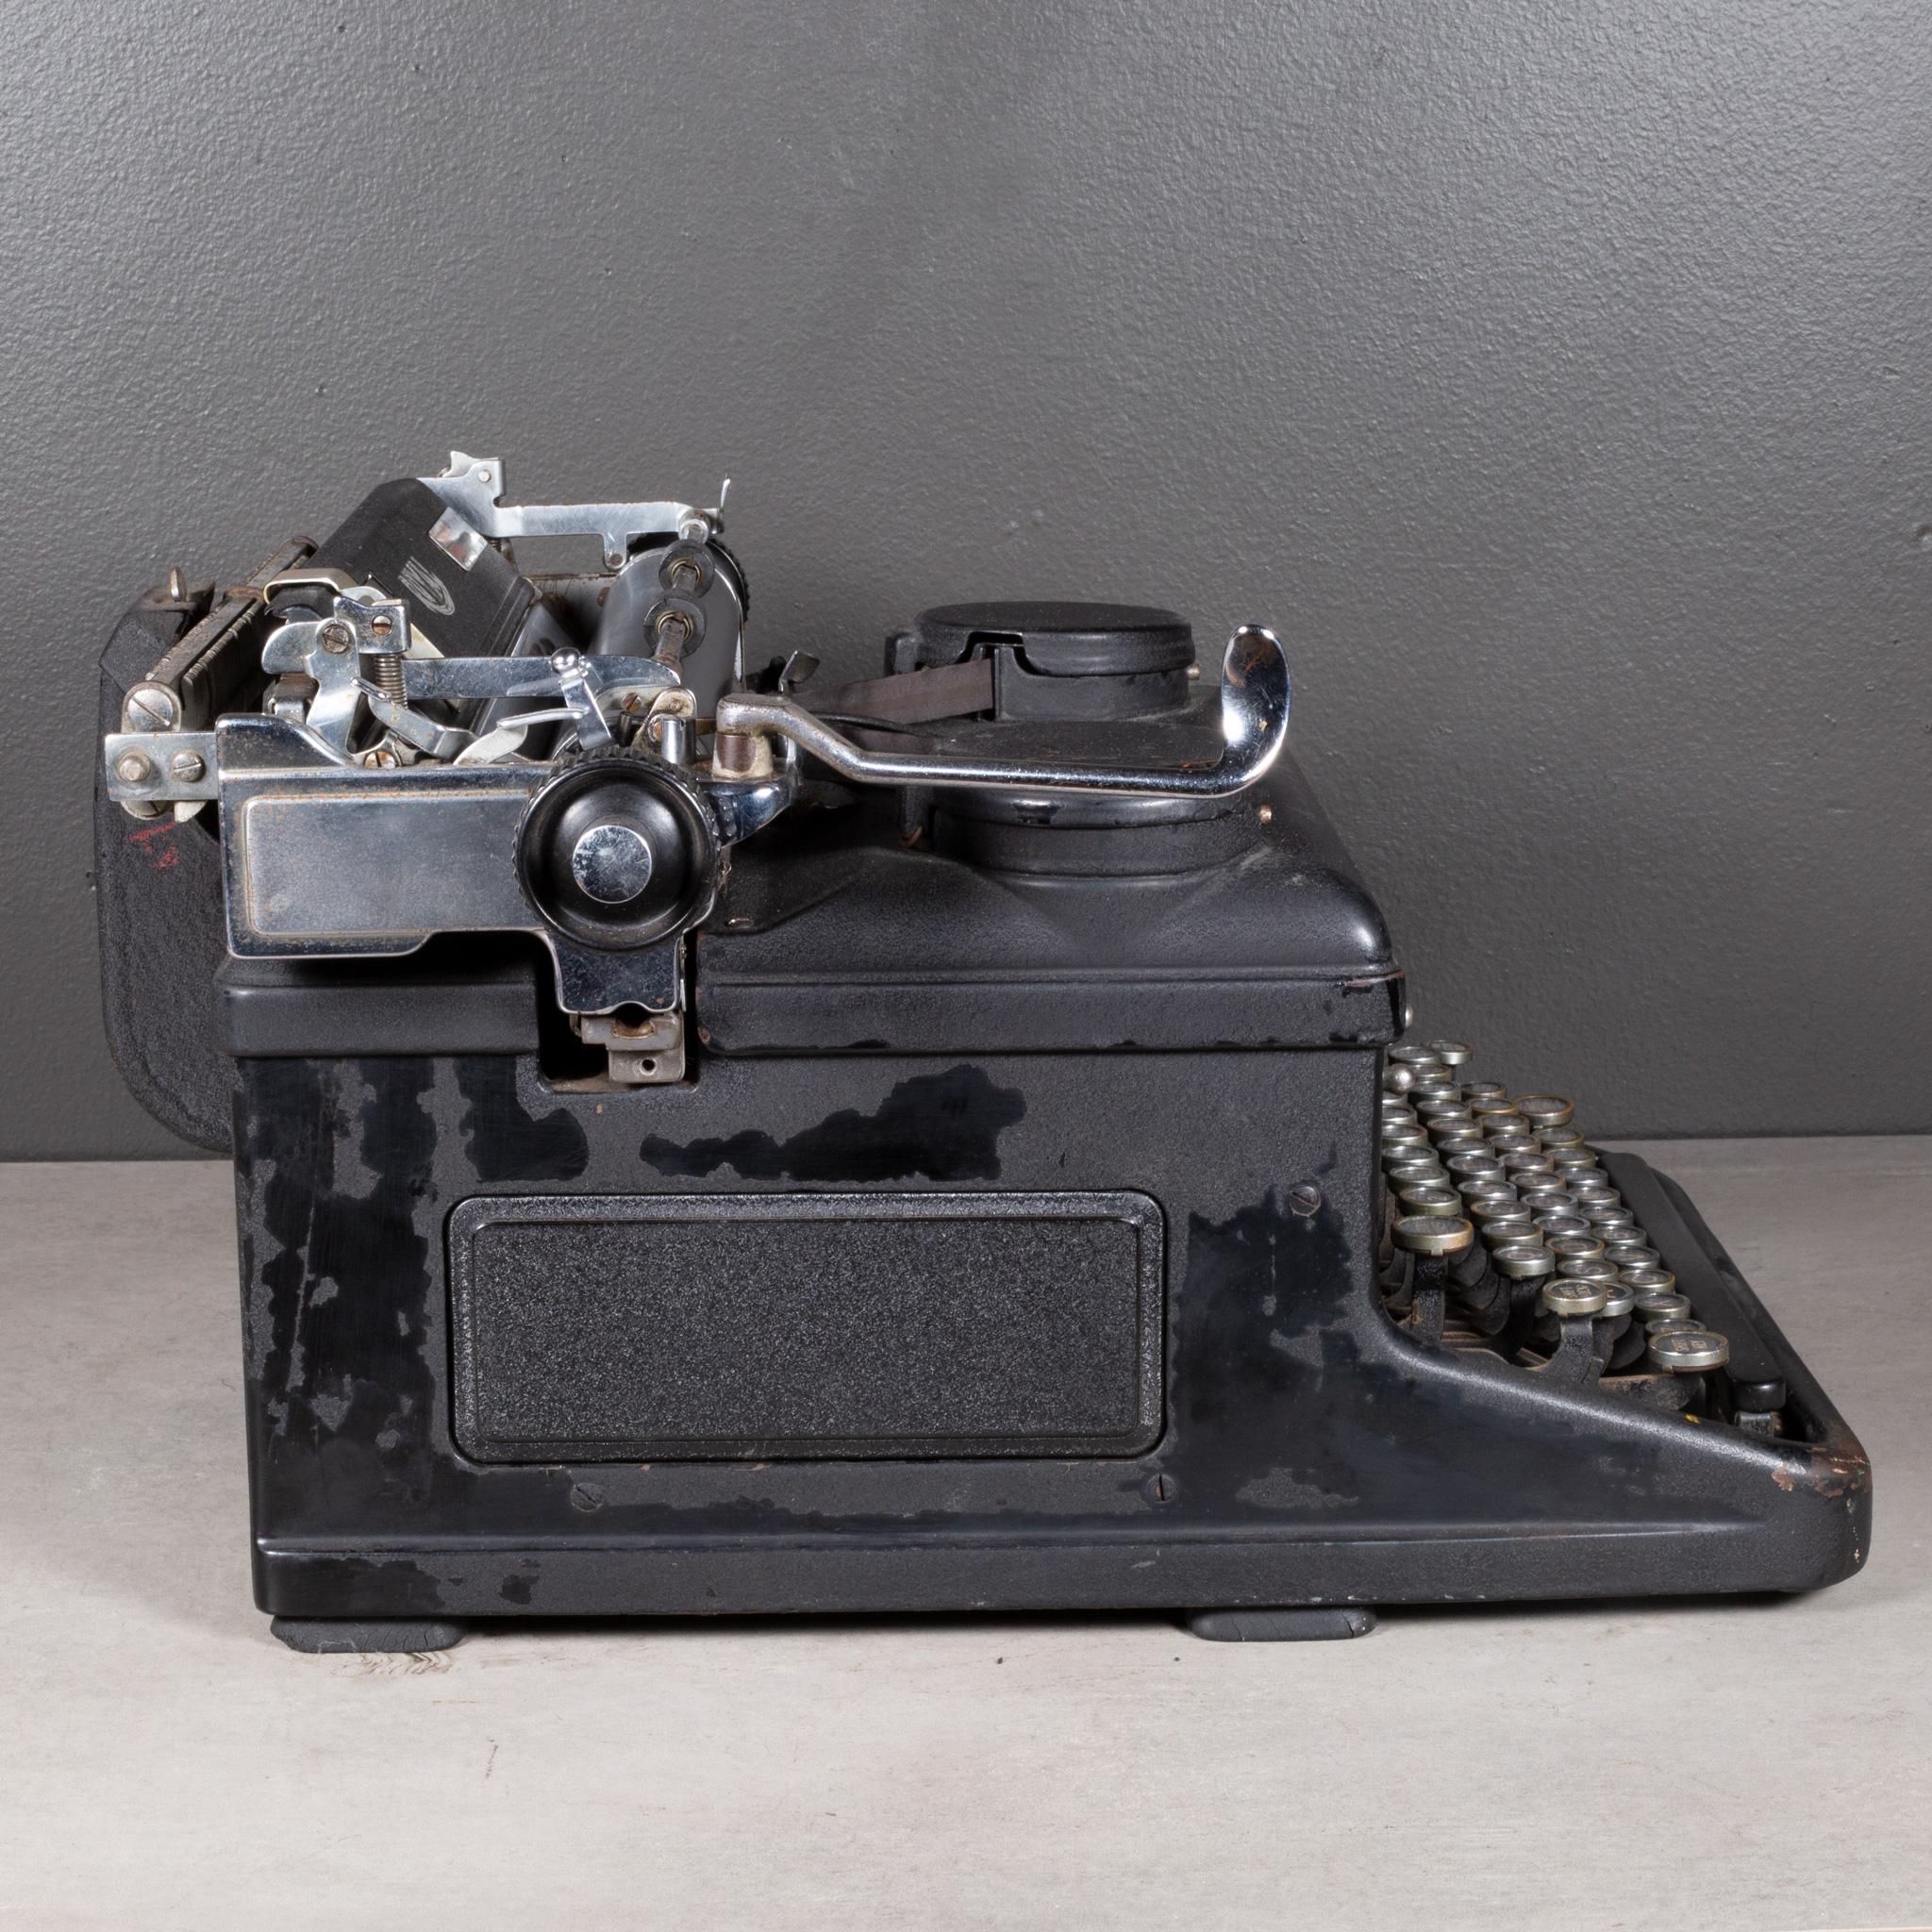 royal typewriter vintage